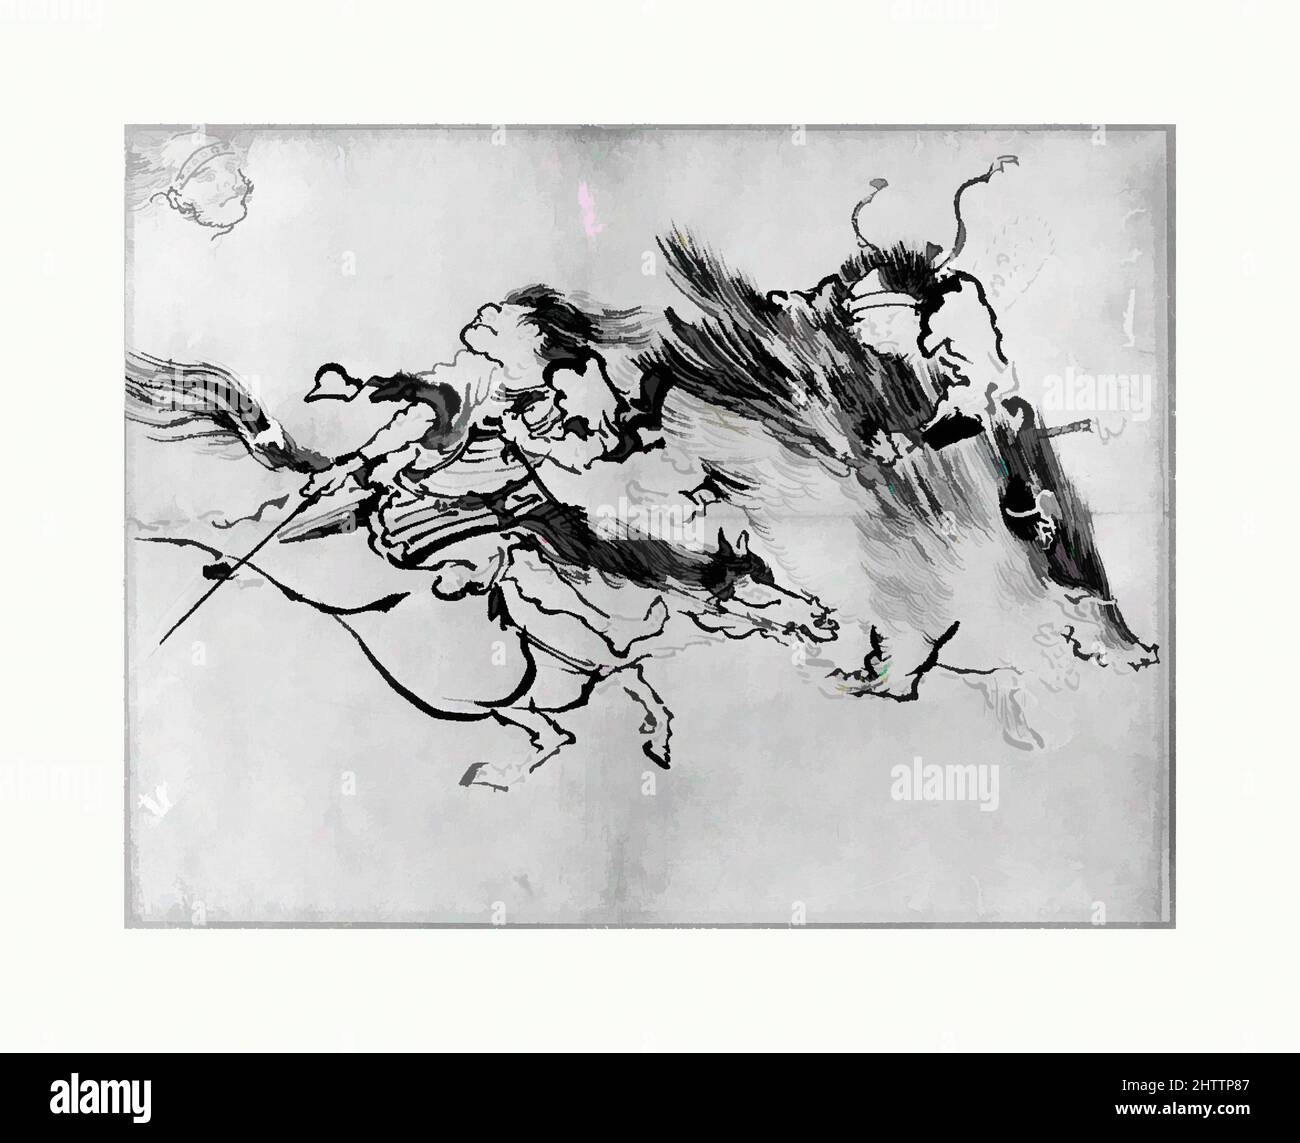 Art inspiré de deux figures, période Edo (1615–1868), 19th siècle, Japon, peinture à maté; encre sur papier (dessin de lavage ?), 10 3/8 x 14 po. (26,4 x 35,6 cm), peintures, Katsushika Hokusai (japonais, Tokyo (Edo) 1760–1849 Tokyo (Edo, œuvres classiques modernisées par Artotop avec une touche de modernité. Formes, couleur et valeur, impact visuel accrocheur sur l'art émotions par la liberté d'œuvres d'art d'une manière contemporaine. Un message intemporel qui cherche une nouvelle direction créative. Artistes qui se tournent vers le support numérique et créent le NFT Artotop Banque D'Images